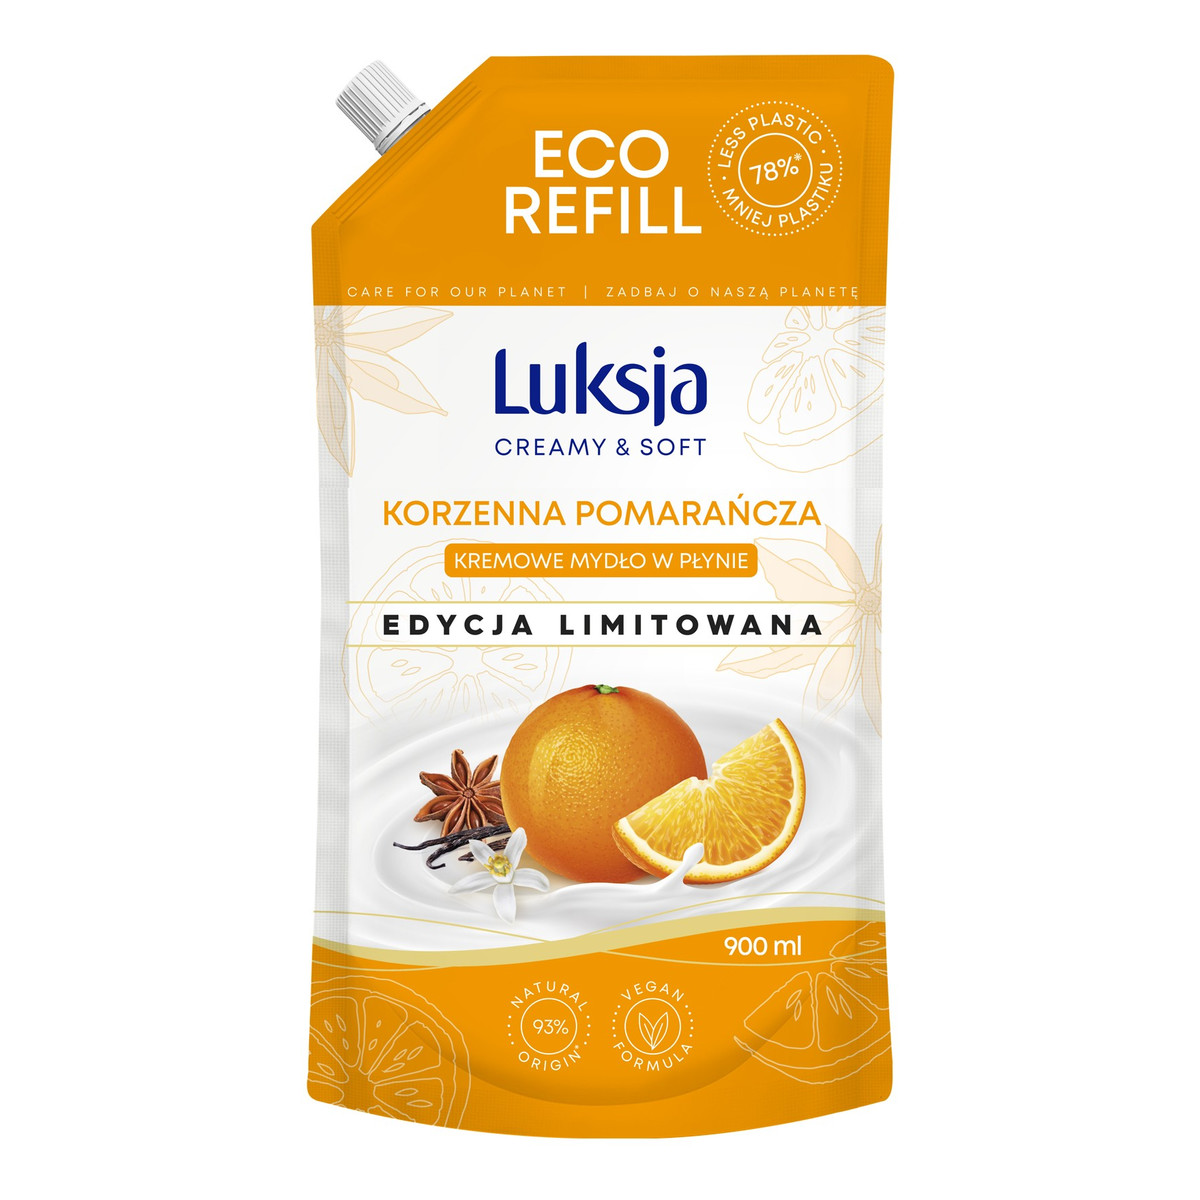 Sarantis LUKSJA Creamy & Soft Kremowe mydło w płynie-korzenna pomarańcza (edycja limitowana)-zapas 900ml